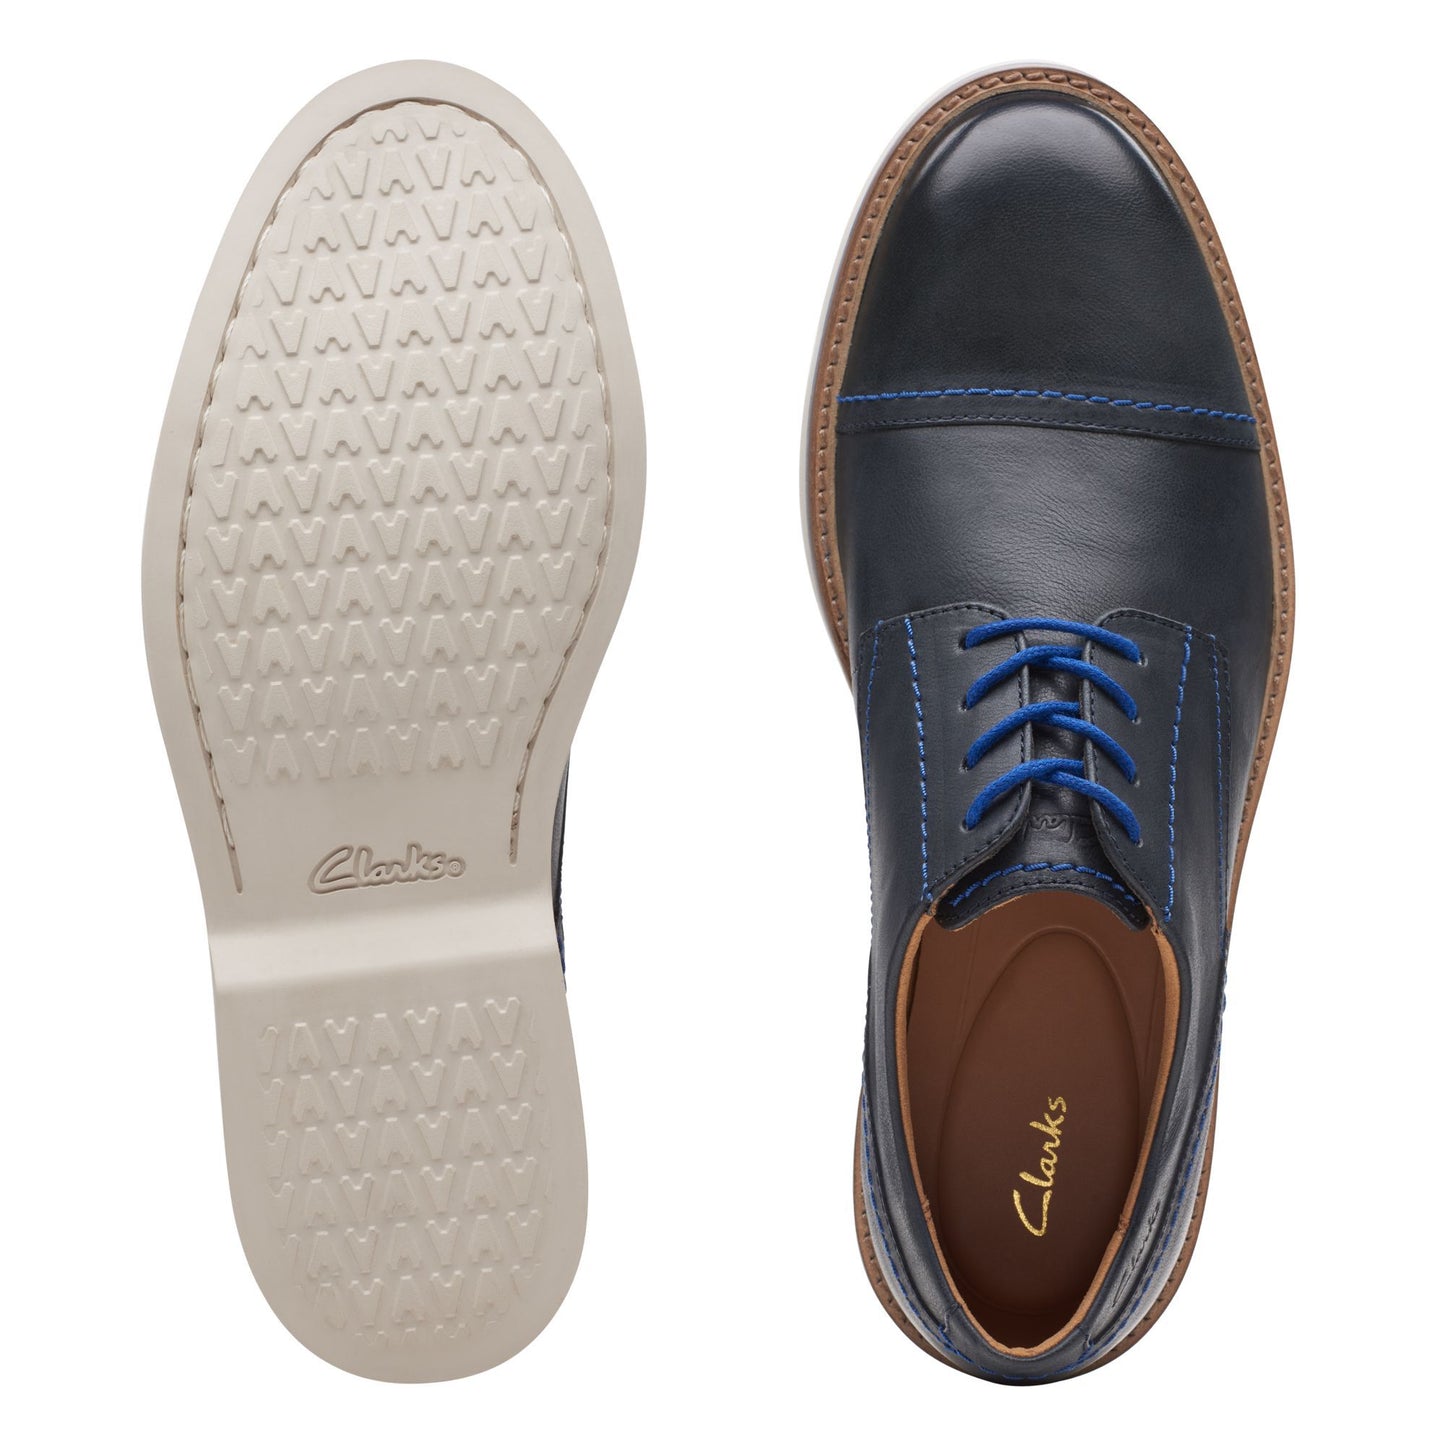 Zapatos Derby De La Marca Clarks Para Hombre Modelo Atticus Lt Cap Navy LeatherEn Color Azul